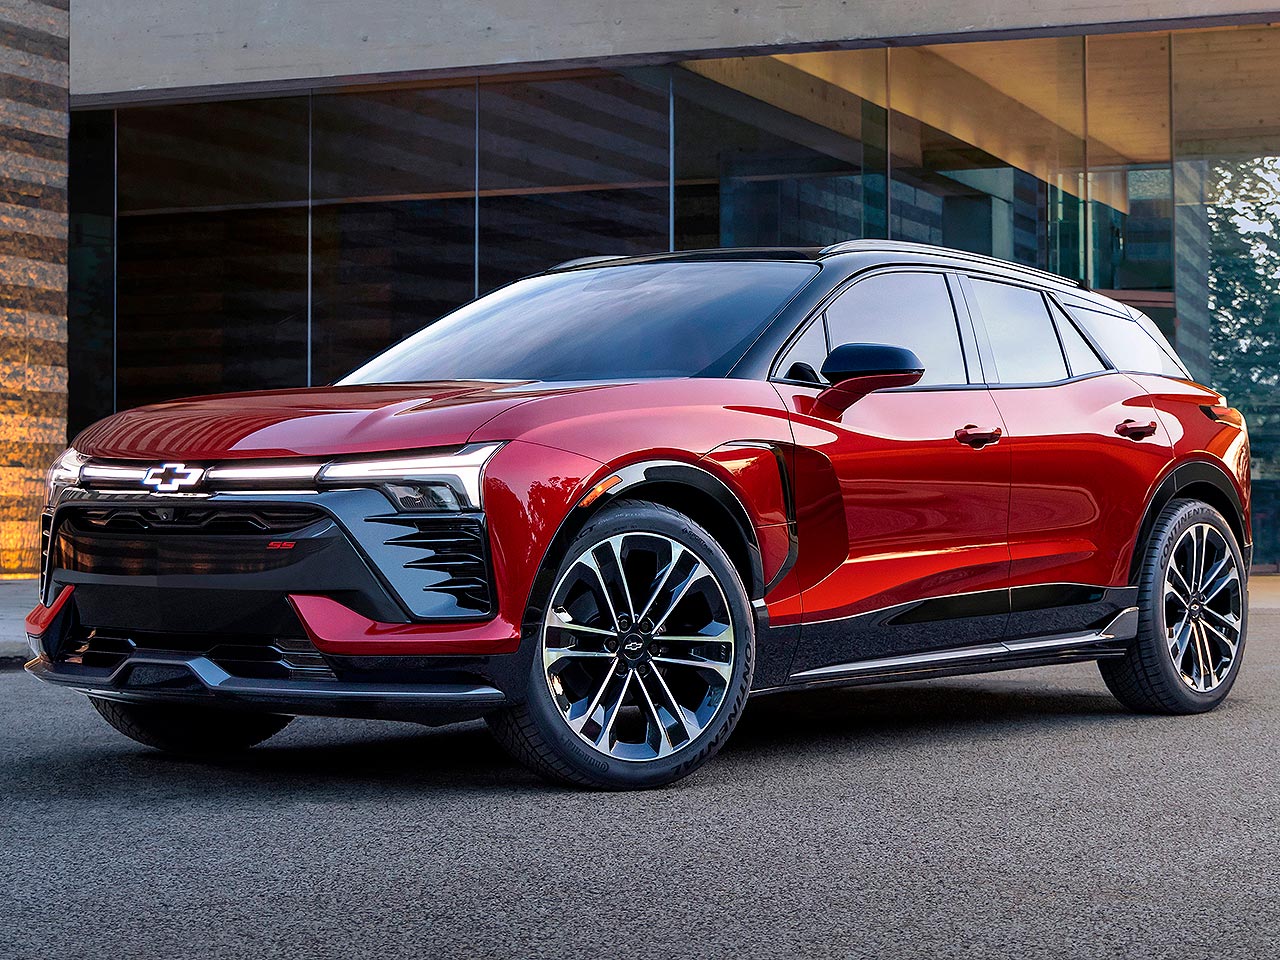 GM começa a produzir o Chevrolet Blazer, novo SUV elétrico que vem ao Brasil